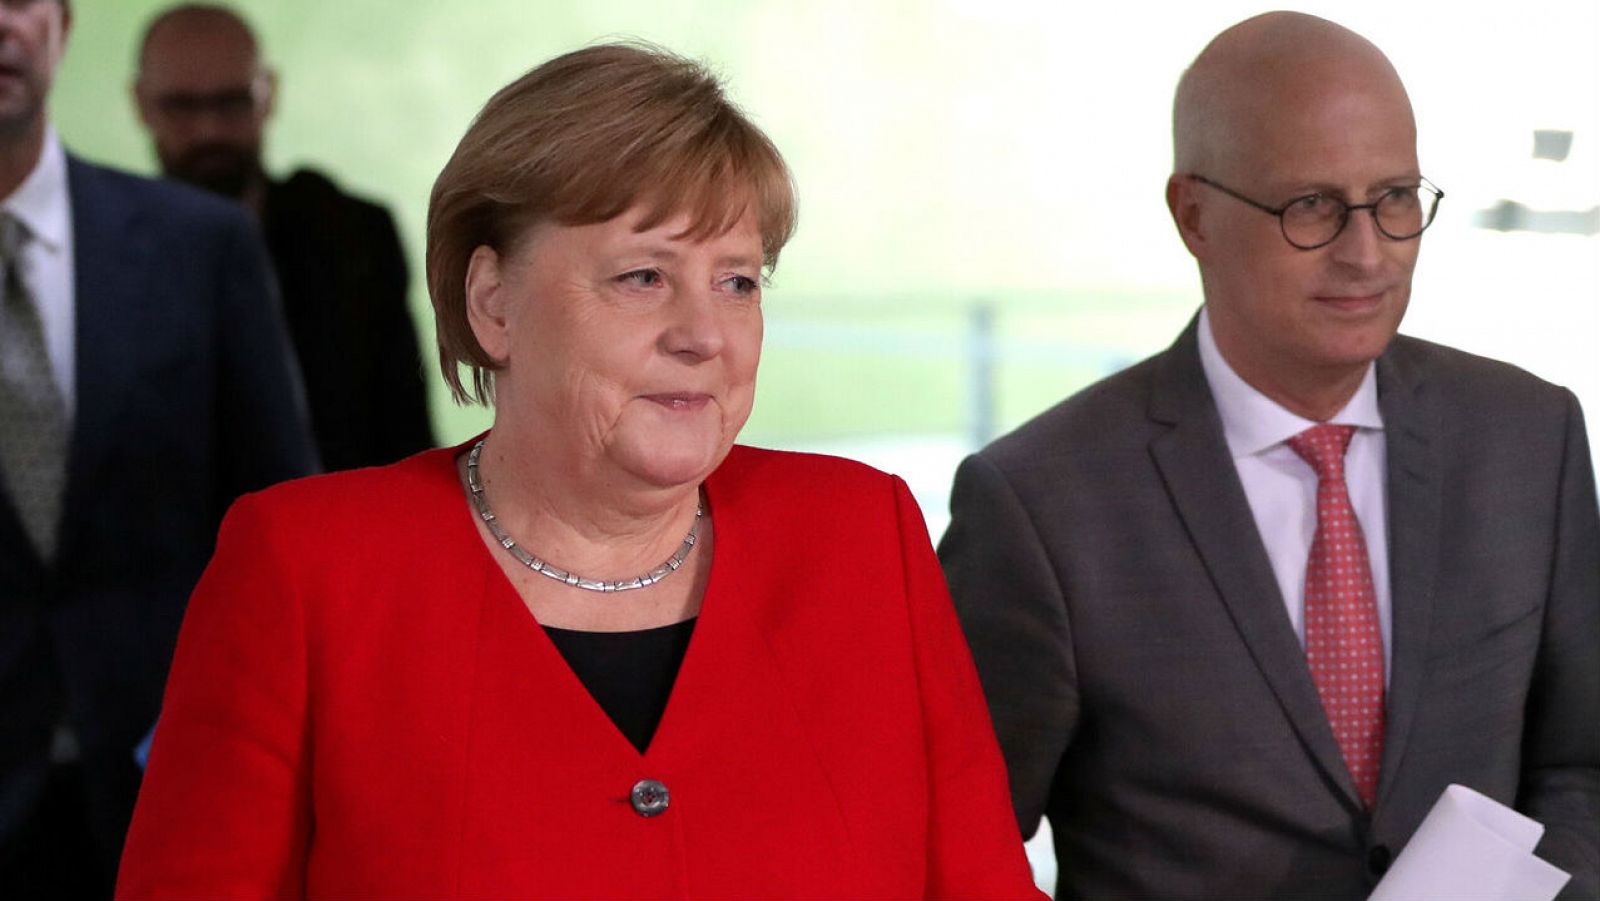 La canciller alemana Angela Merkel y Peter Tschentscher, primer alcalde de Hamburgo, llegan a una conferencia de prensa después de una reunión en línea con los gobernadores estatales alemanes sobre el aflojamiento de las restricciones para reducir la